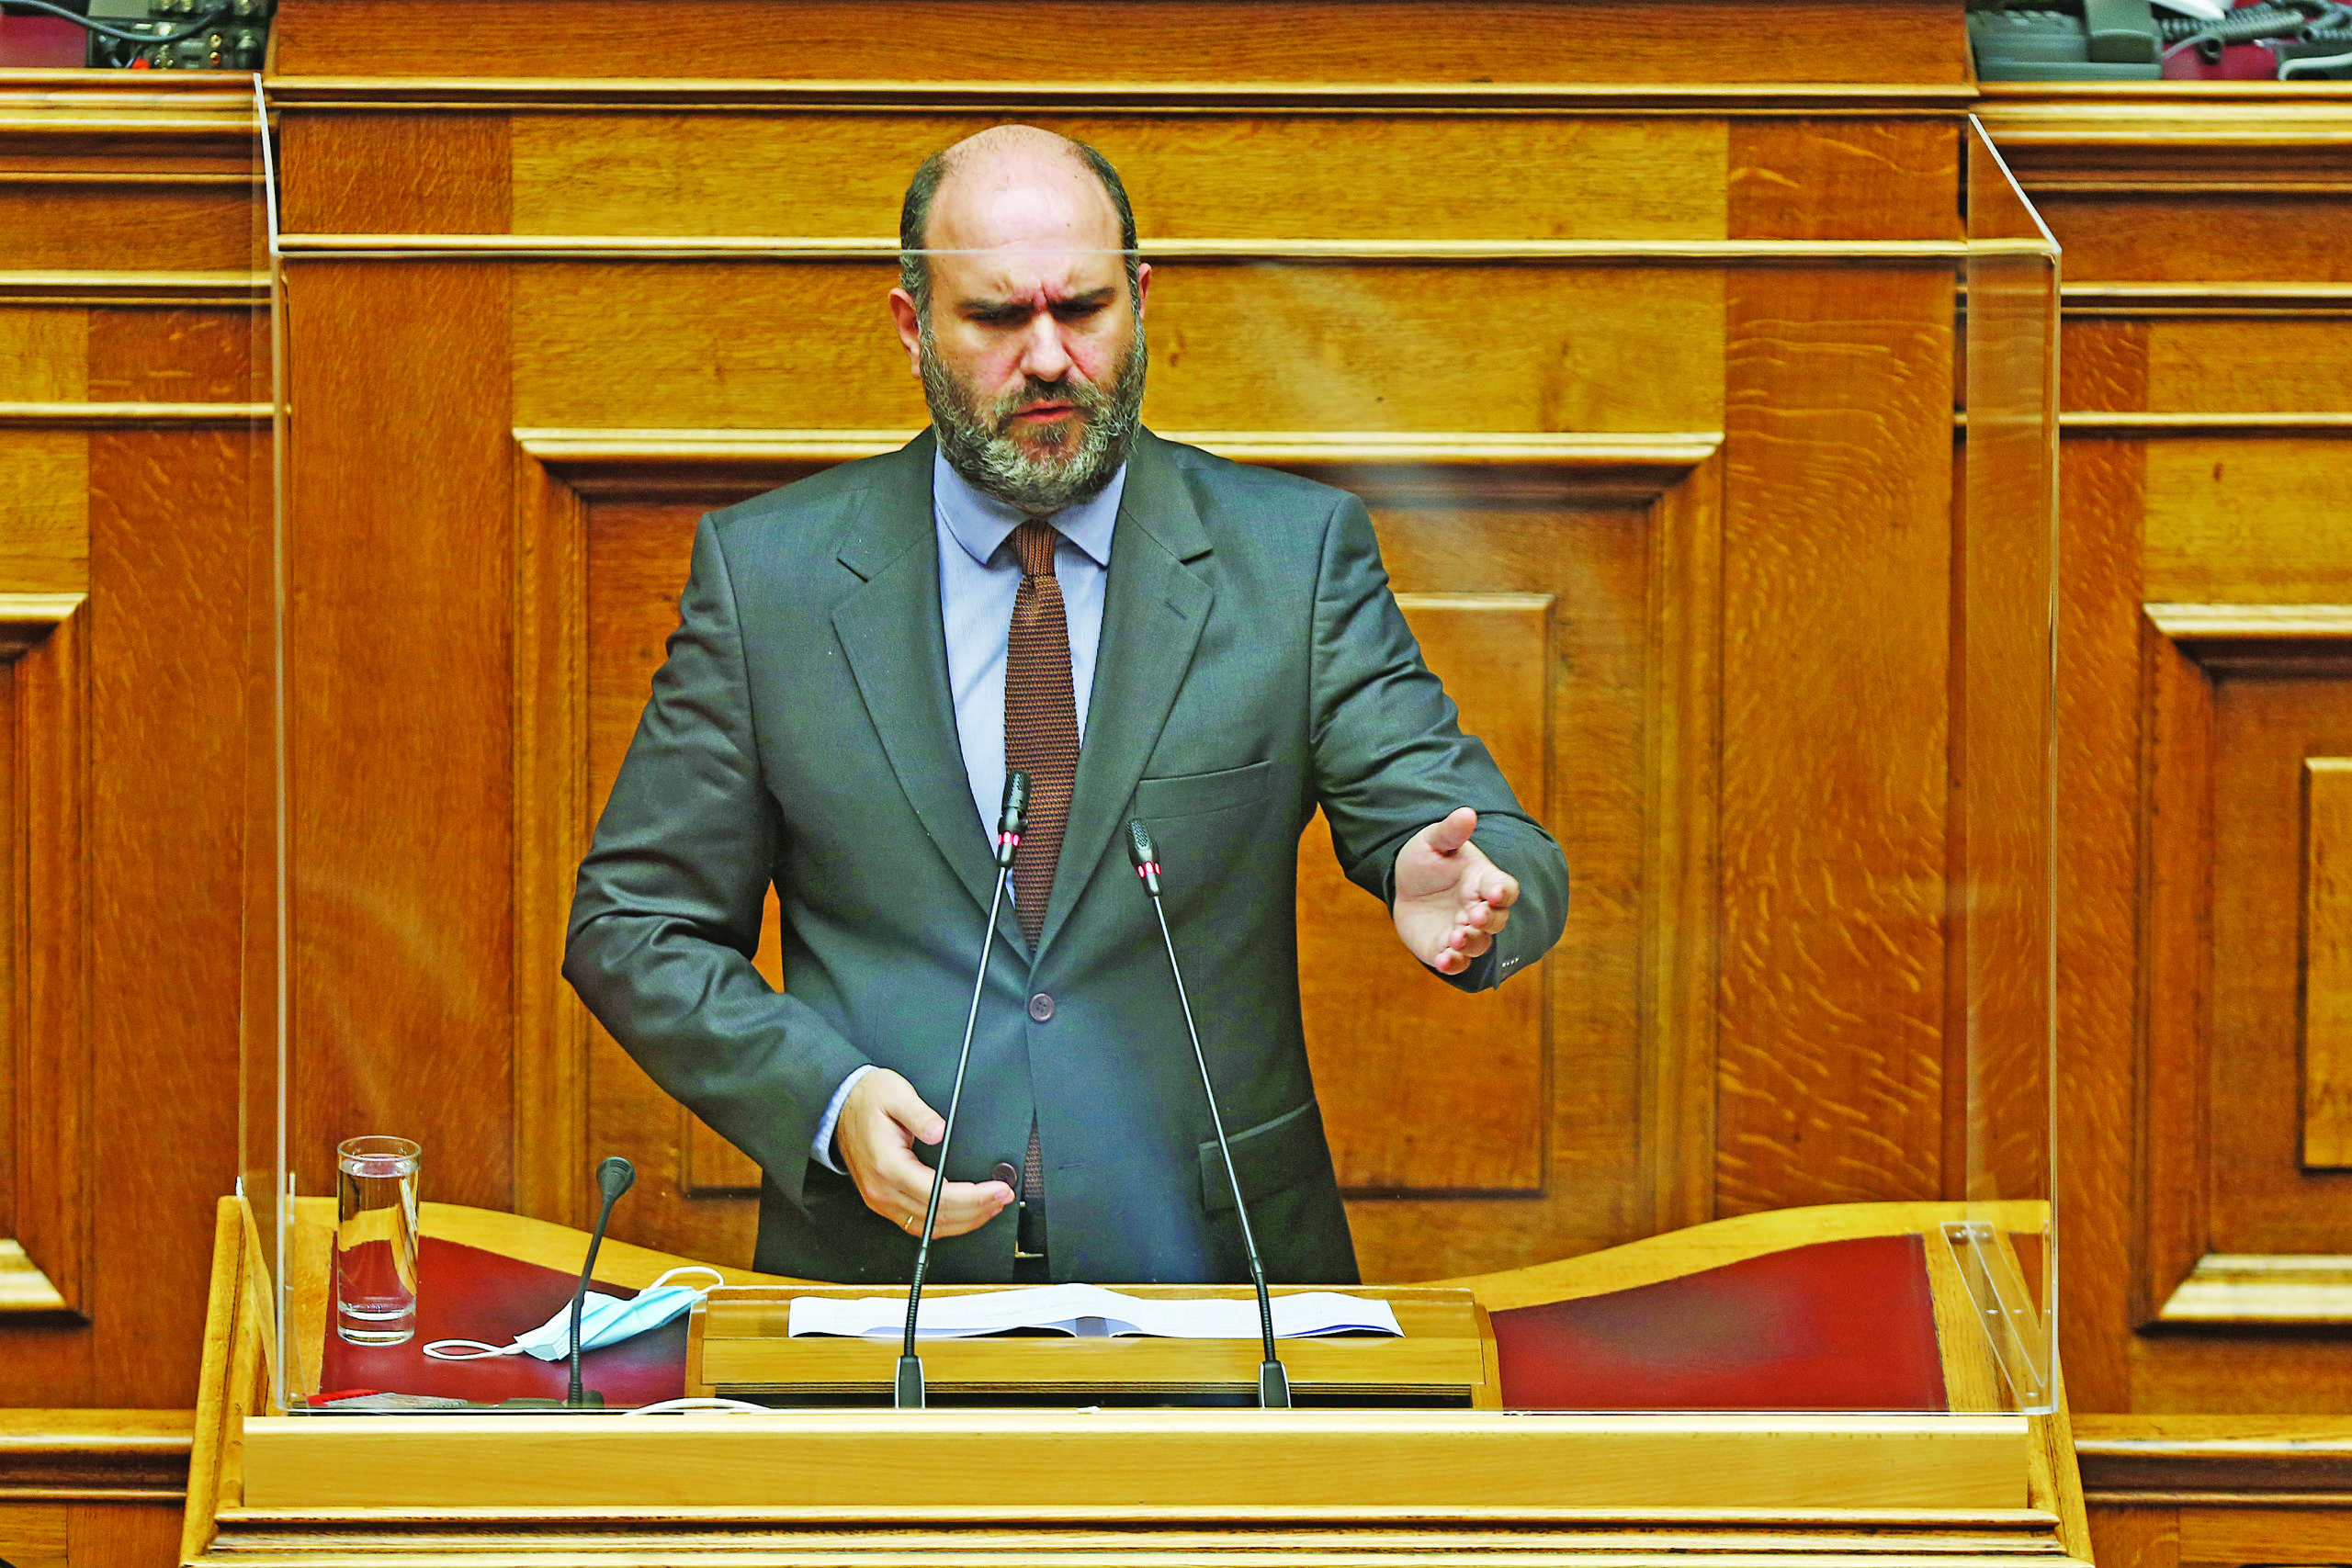 Εξεταστική Επιτροπή - Δ. Μαρκόπουλος: Ακόμα περιμένουμε την απάντηση του ΣΥΡΙΖΑ, γιατί παρακολουθούσε τον κ. Πιτσιόρλα